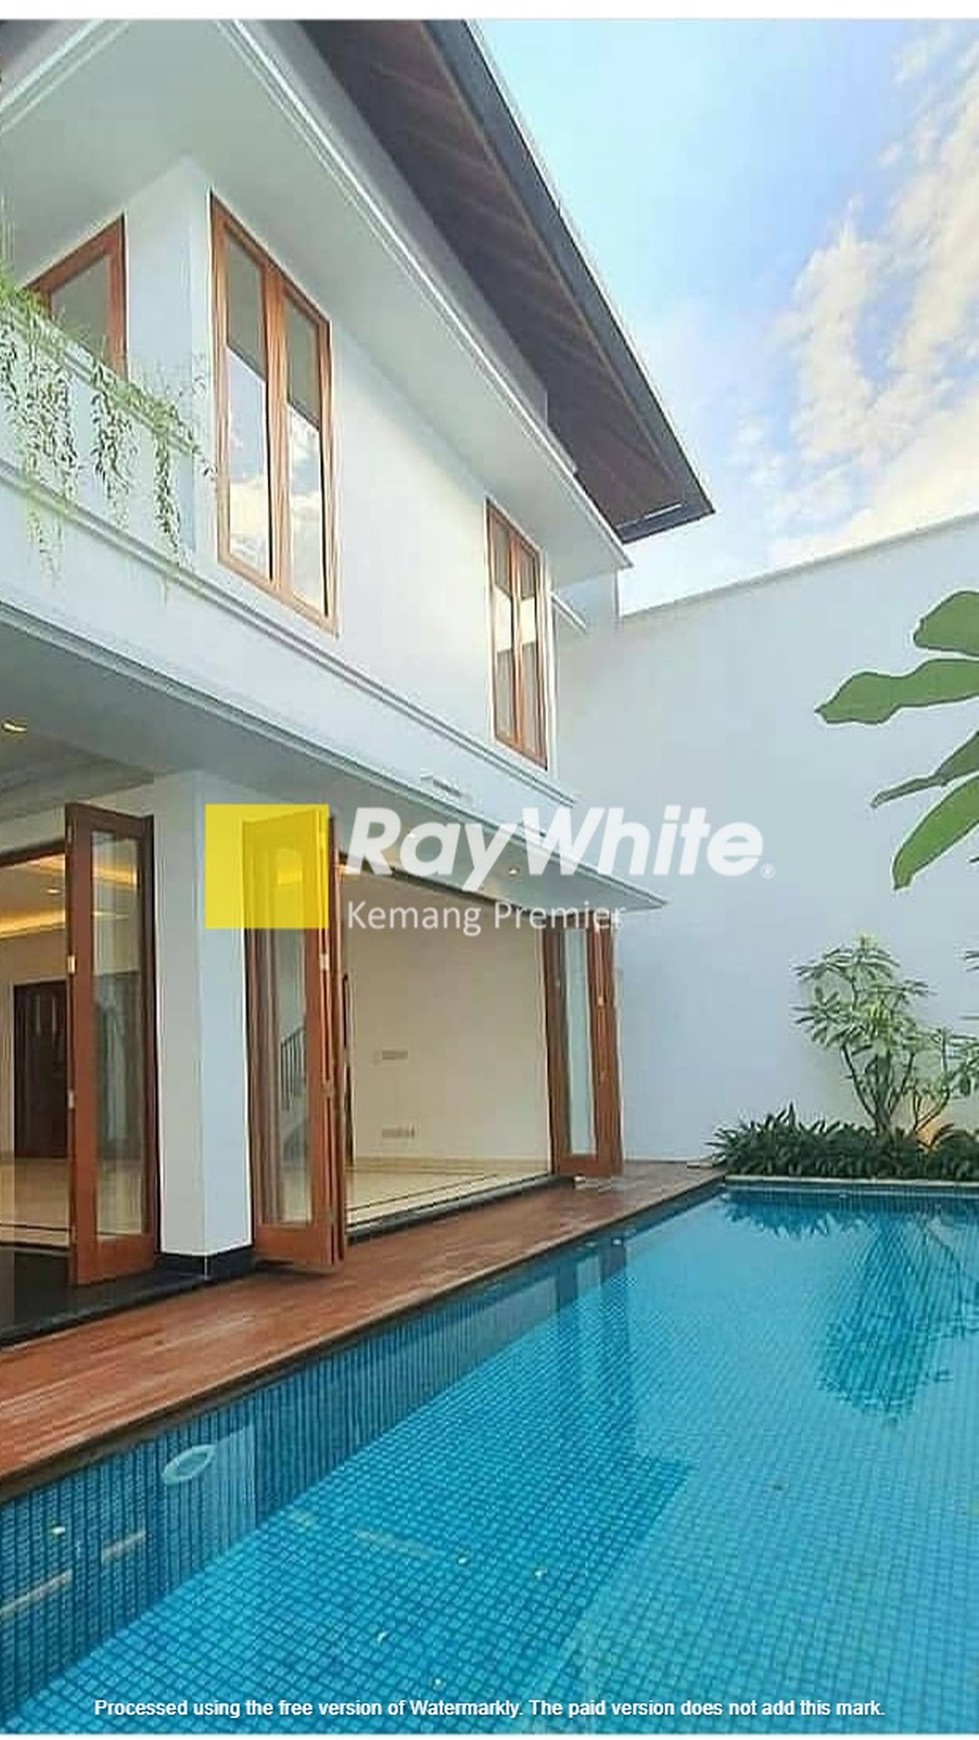 FOR SALE
BRAND NEW HOUSE
Rumah Bangun Baru, Besar, Mewah Eksklusif, Asri & Nyaman
Di Pondok Indah, Jakarta Selatan